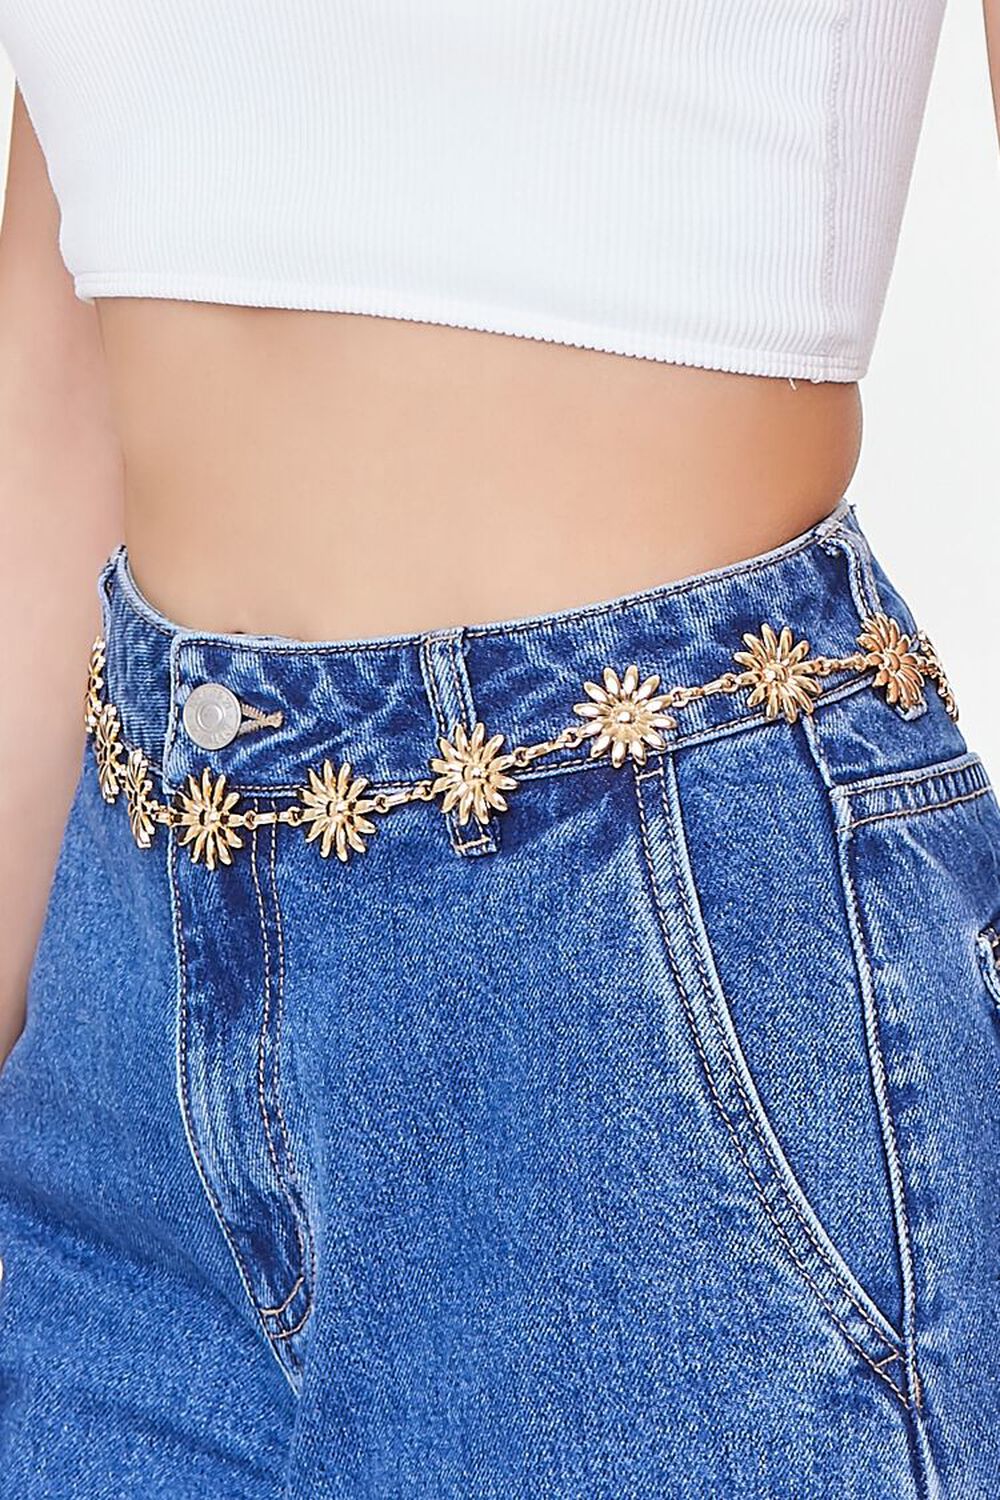 GOLD Floral Chain Hip Belt, image 2